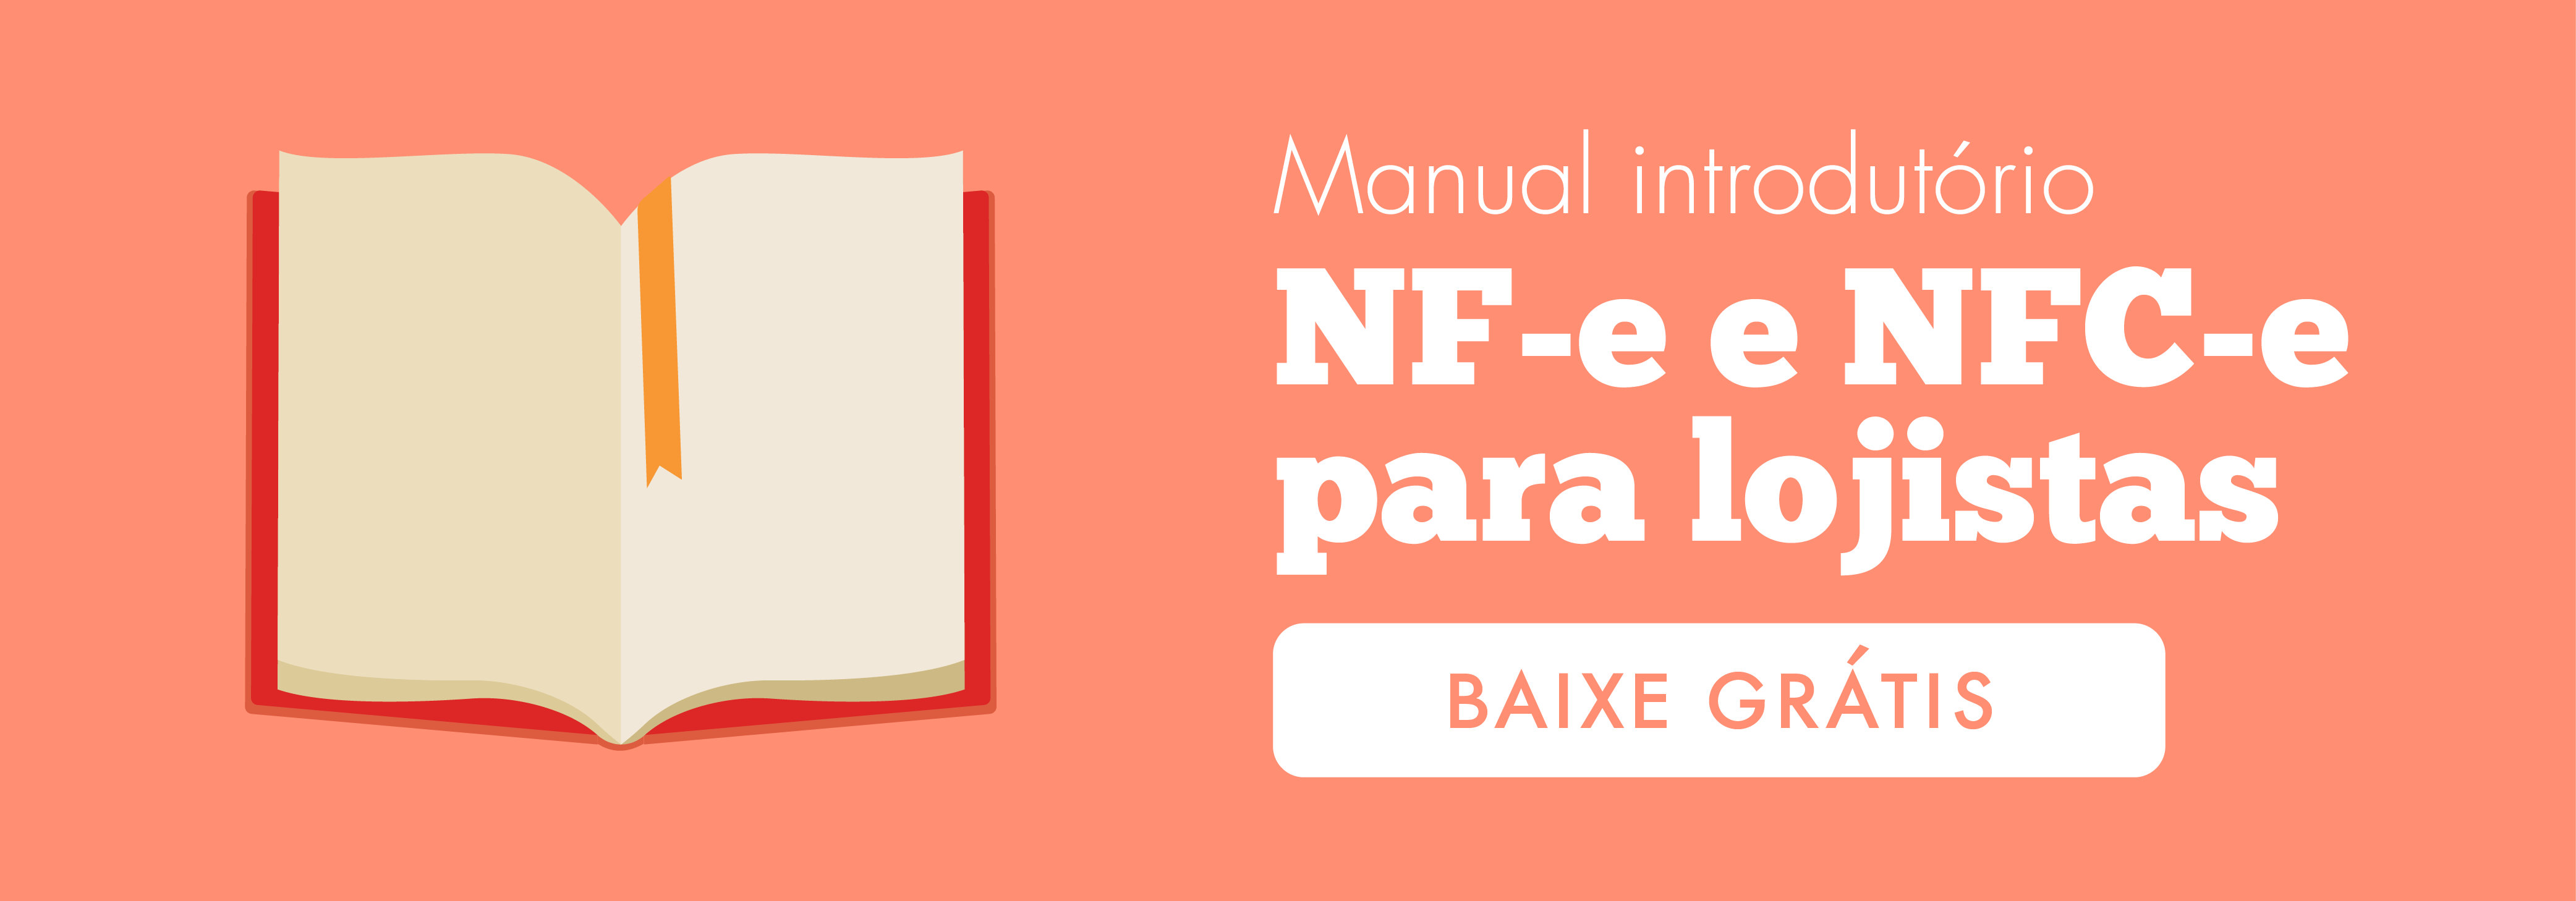 Manual Gratuito para NFE e NFCE